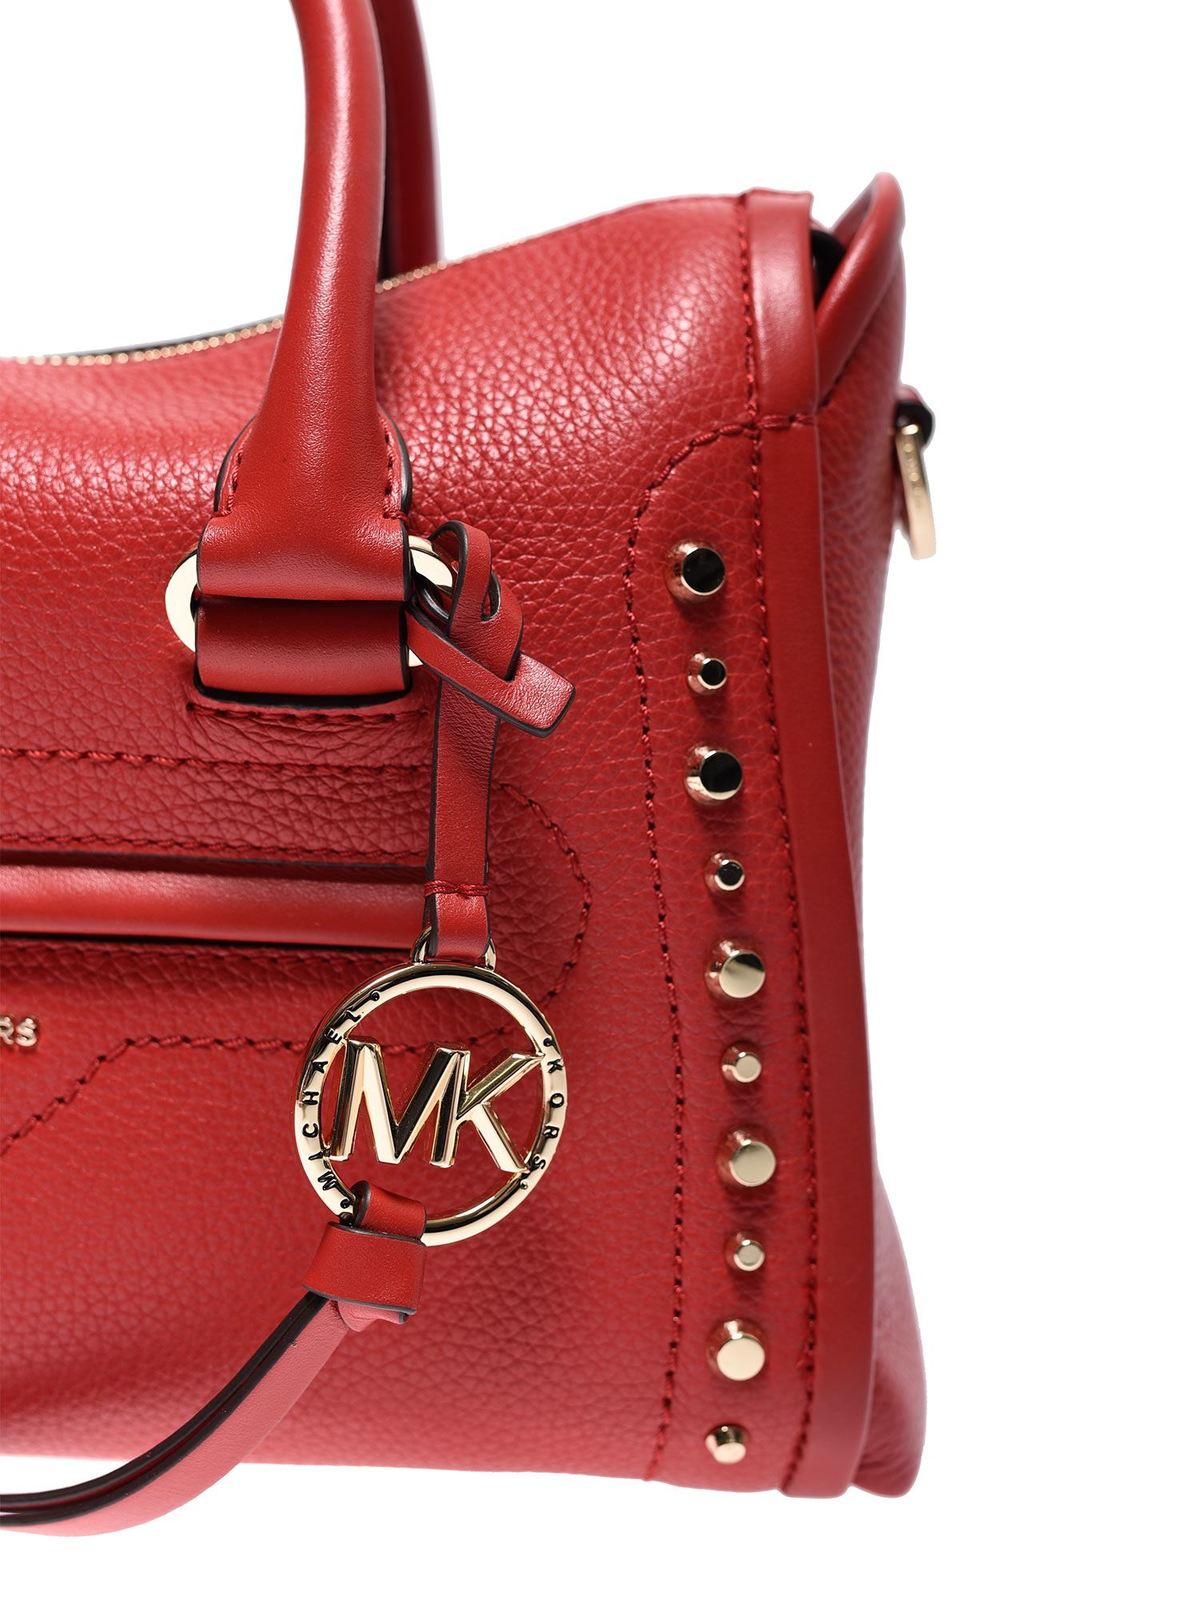 Totes bags Michael Kors - Carine handbag in red - 30S0GCCS1T610